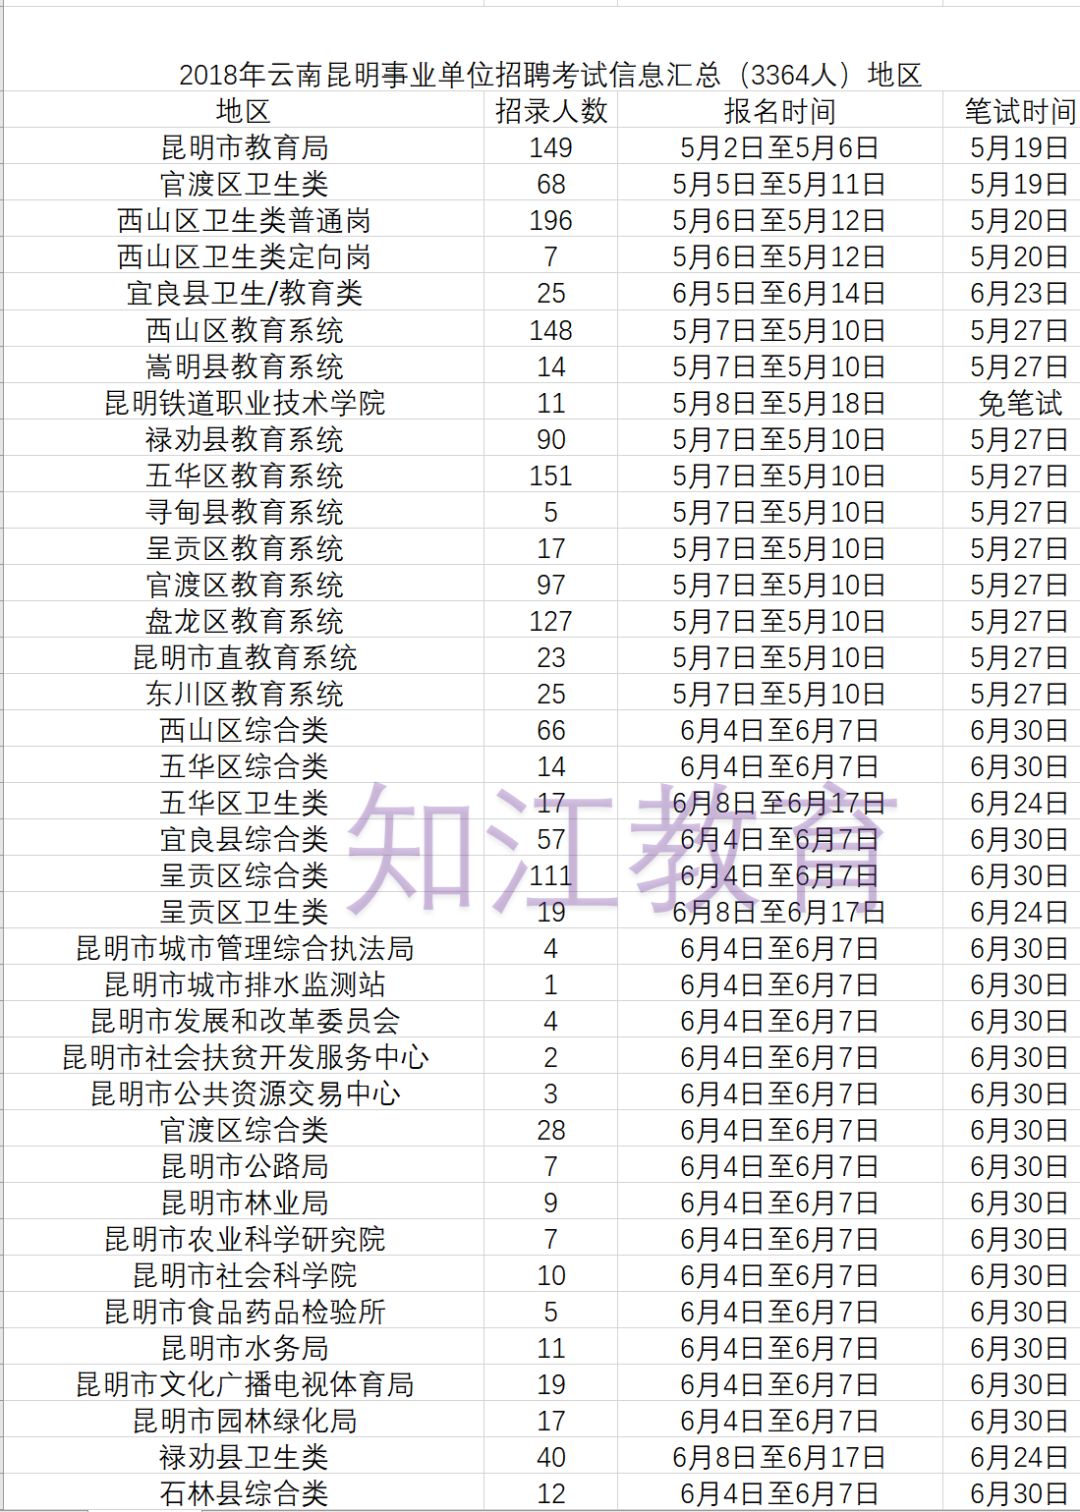 中国人口数量变化图_昆明市人口数量